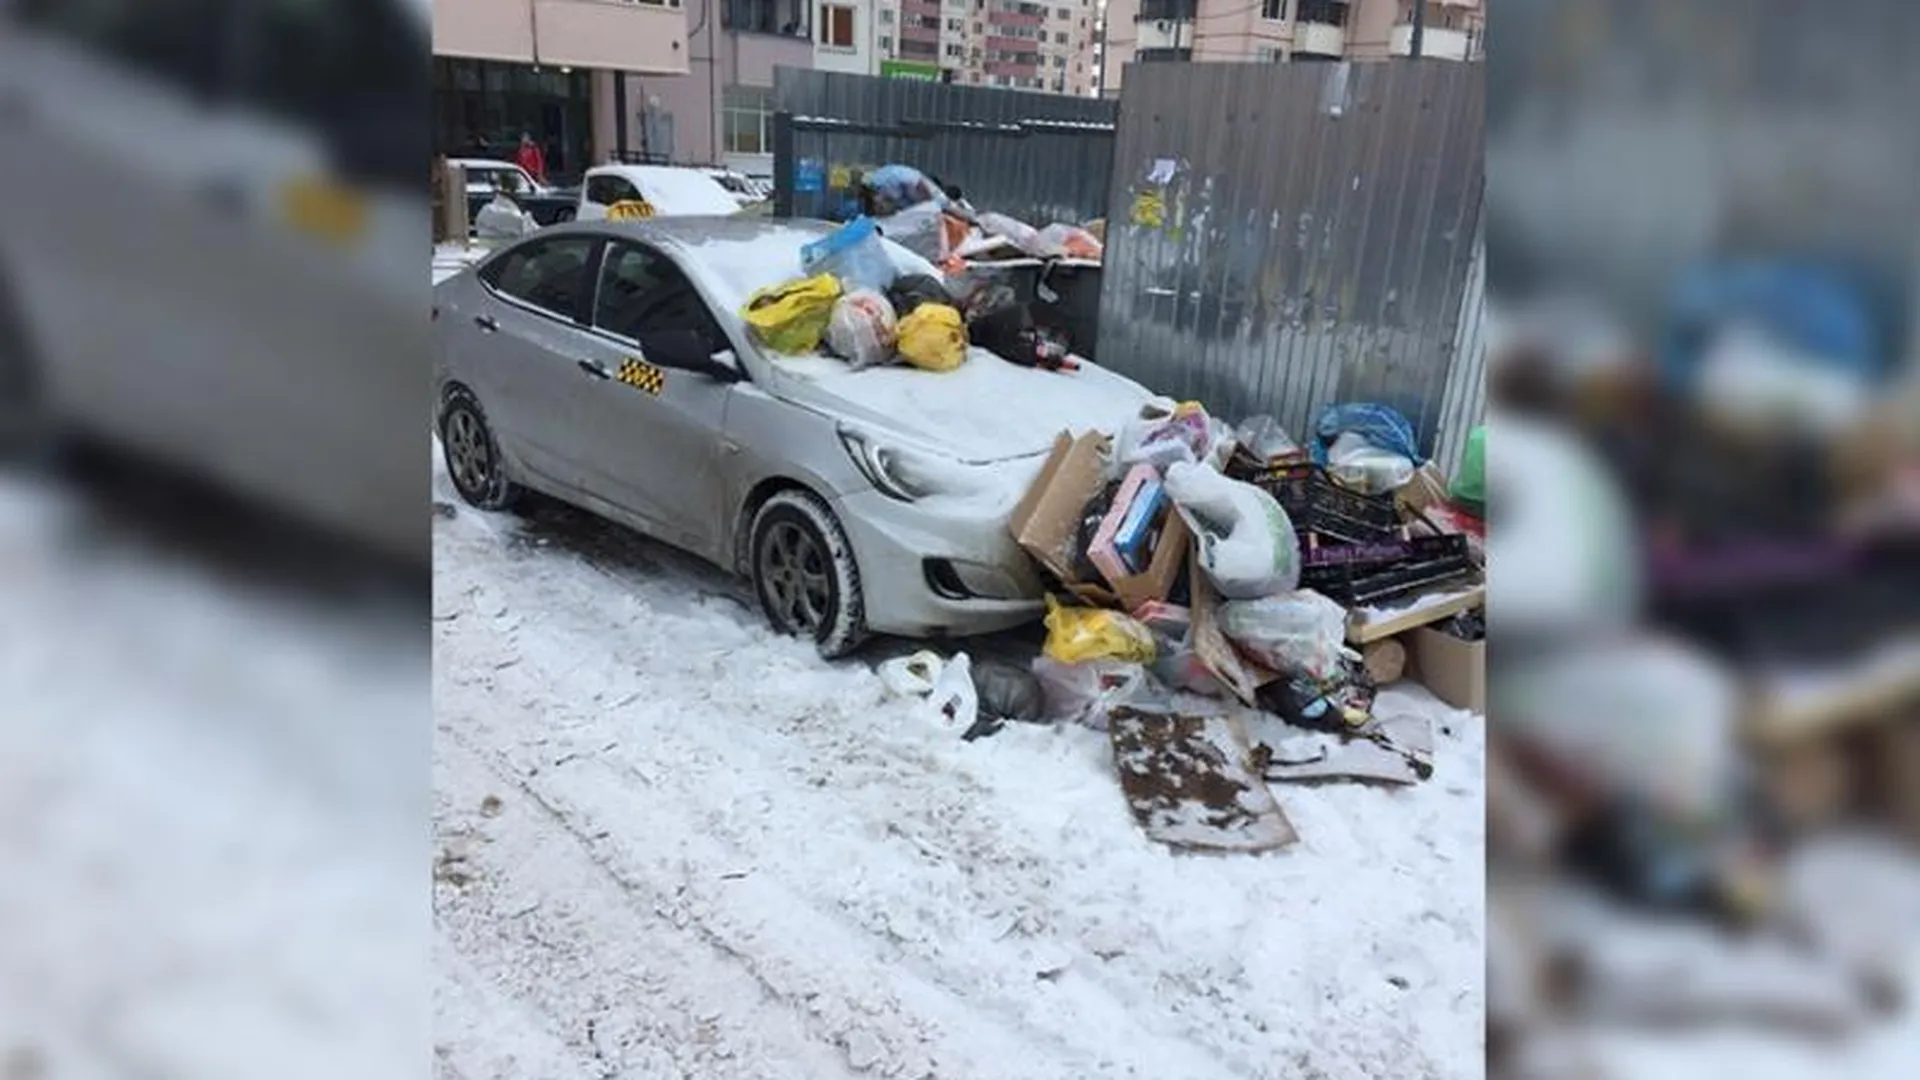 Жители Трехгорки наказали таксиста, закидав его машину мусором